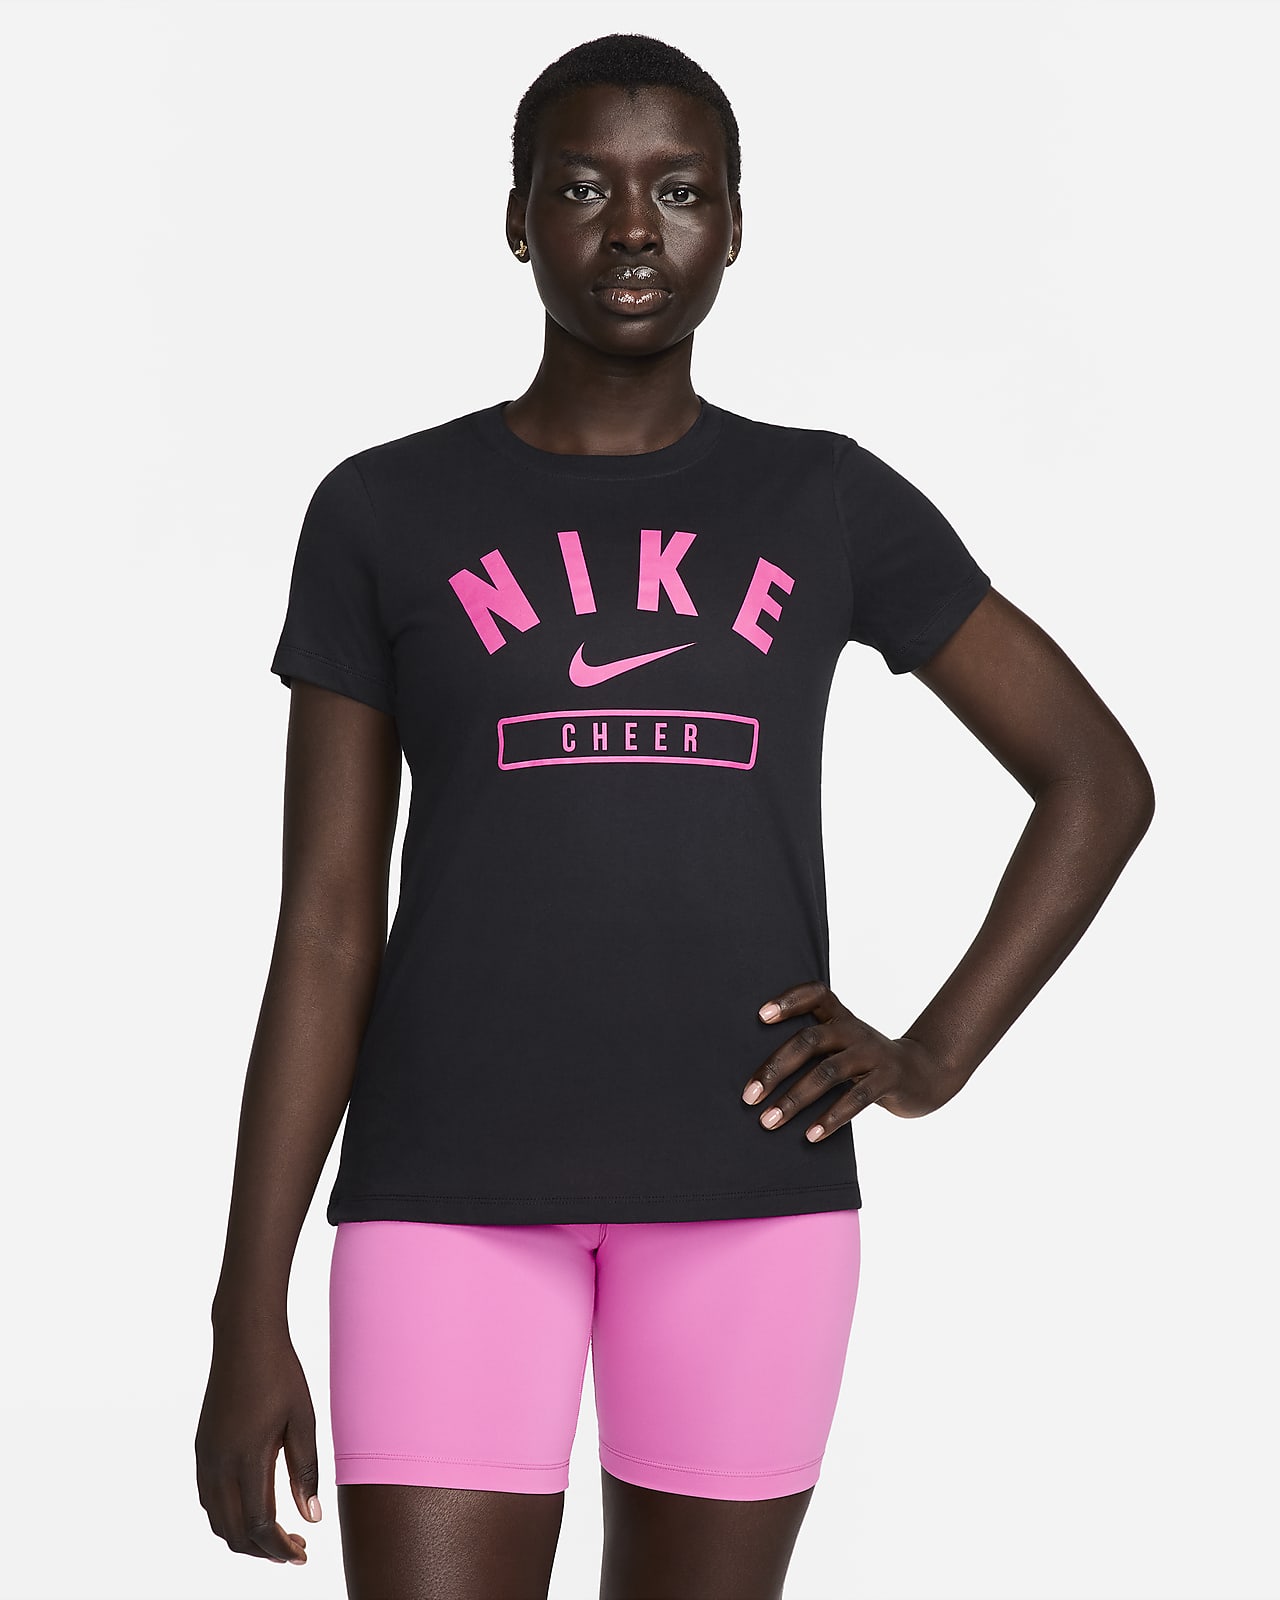 Nike Women's Cheer T-Shirt